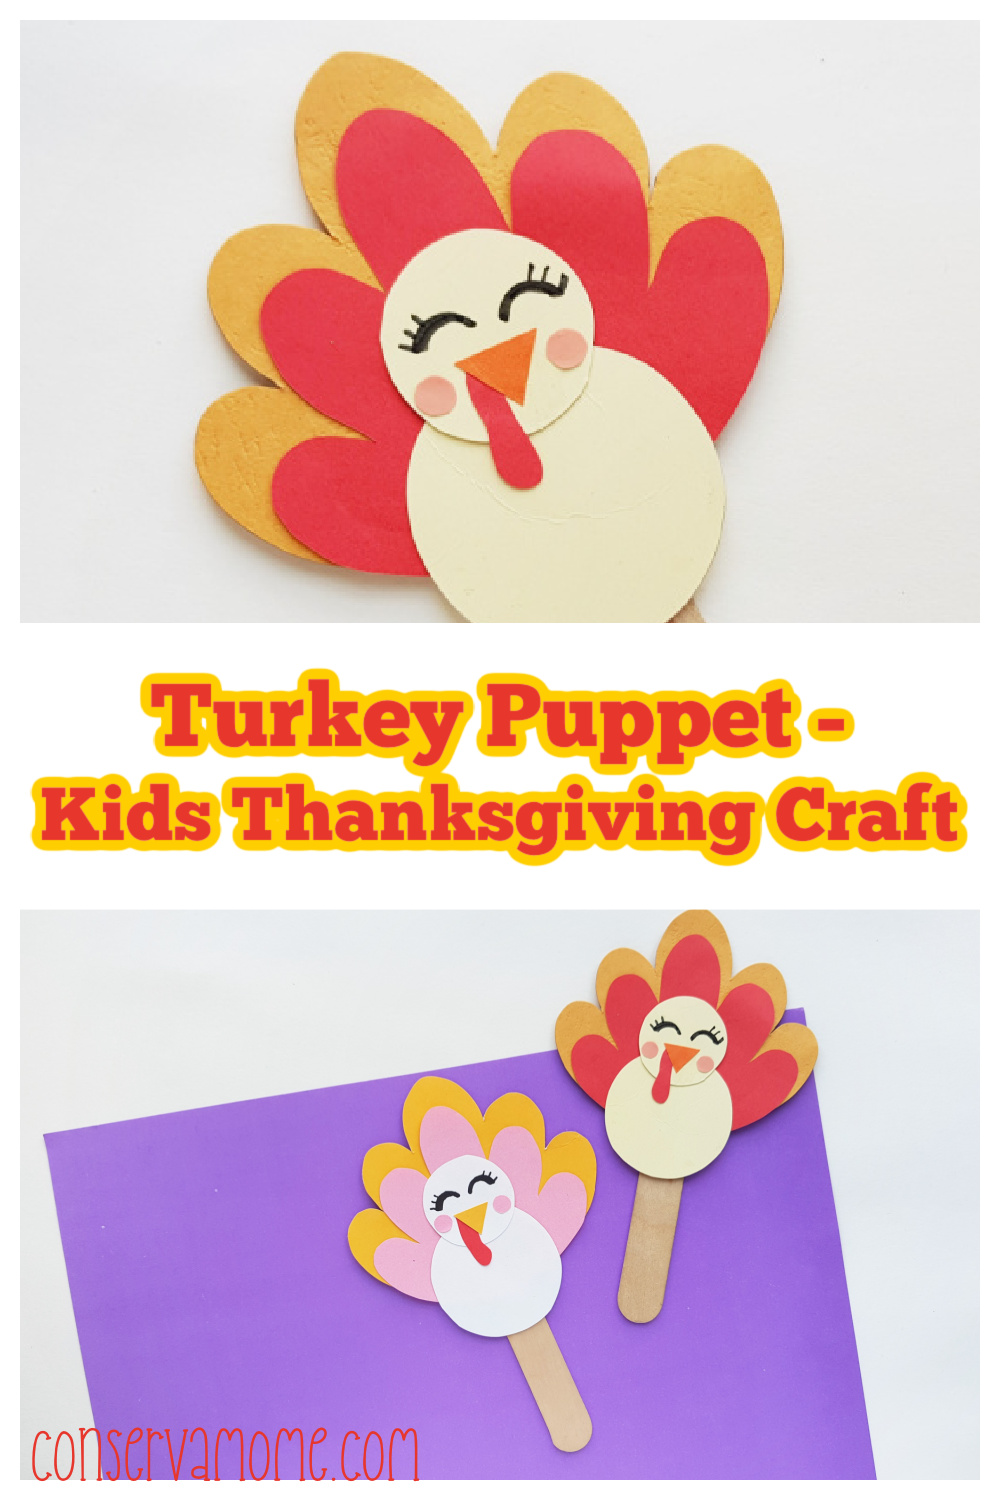 Turkey Puppet- Kids Thanksgiving Craft